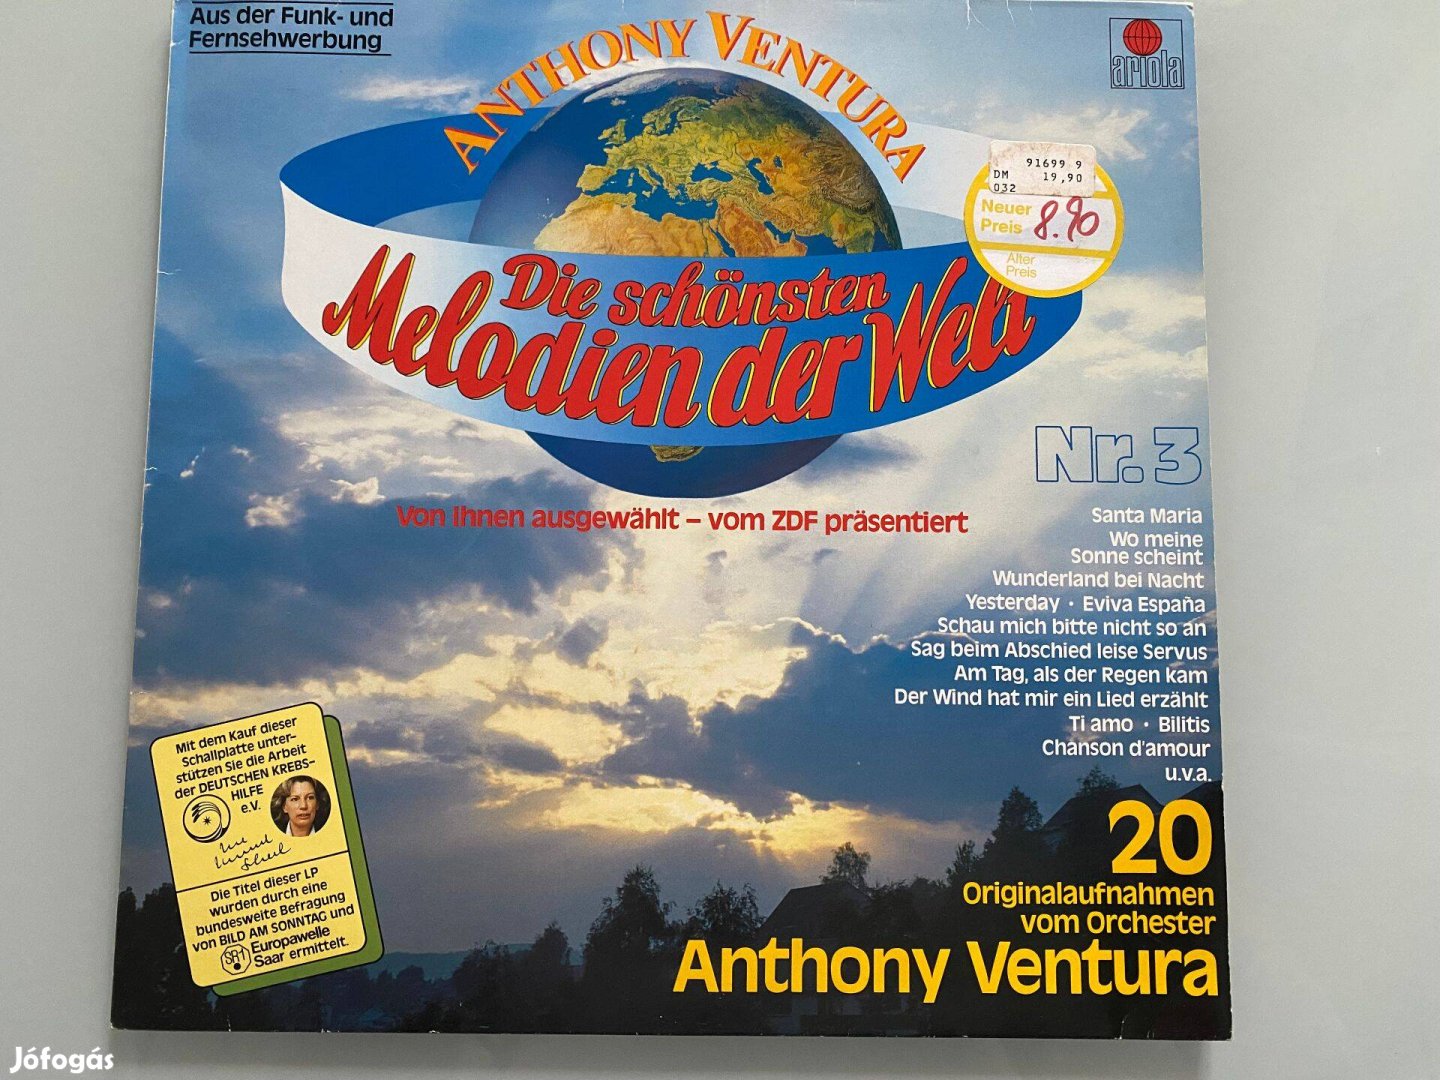 Anthony Ventura: Die Schönsten Melodien Der Welt Nr. 3 bakelit, vinyl